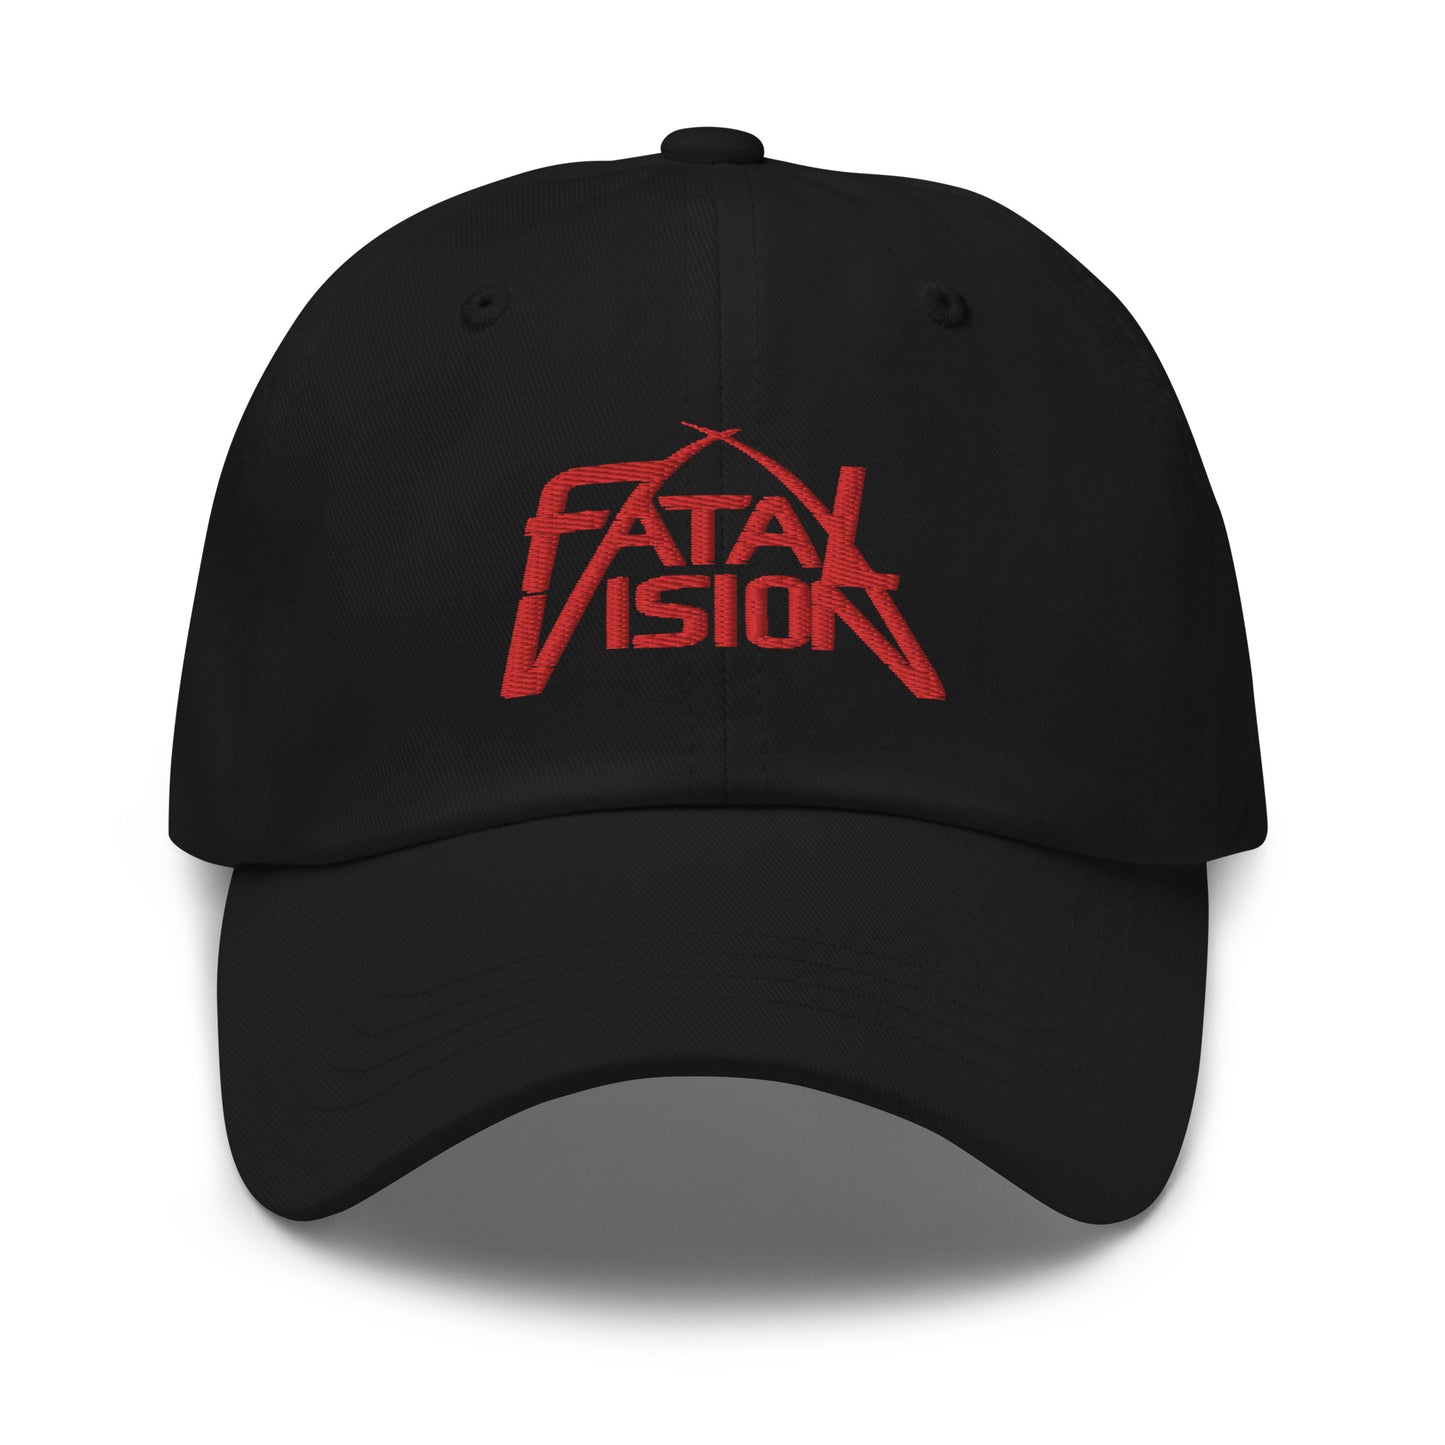 The Fatal Vision Logo Cap